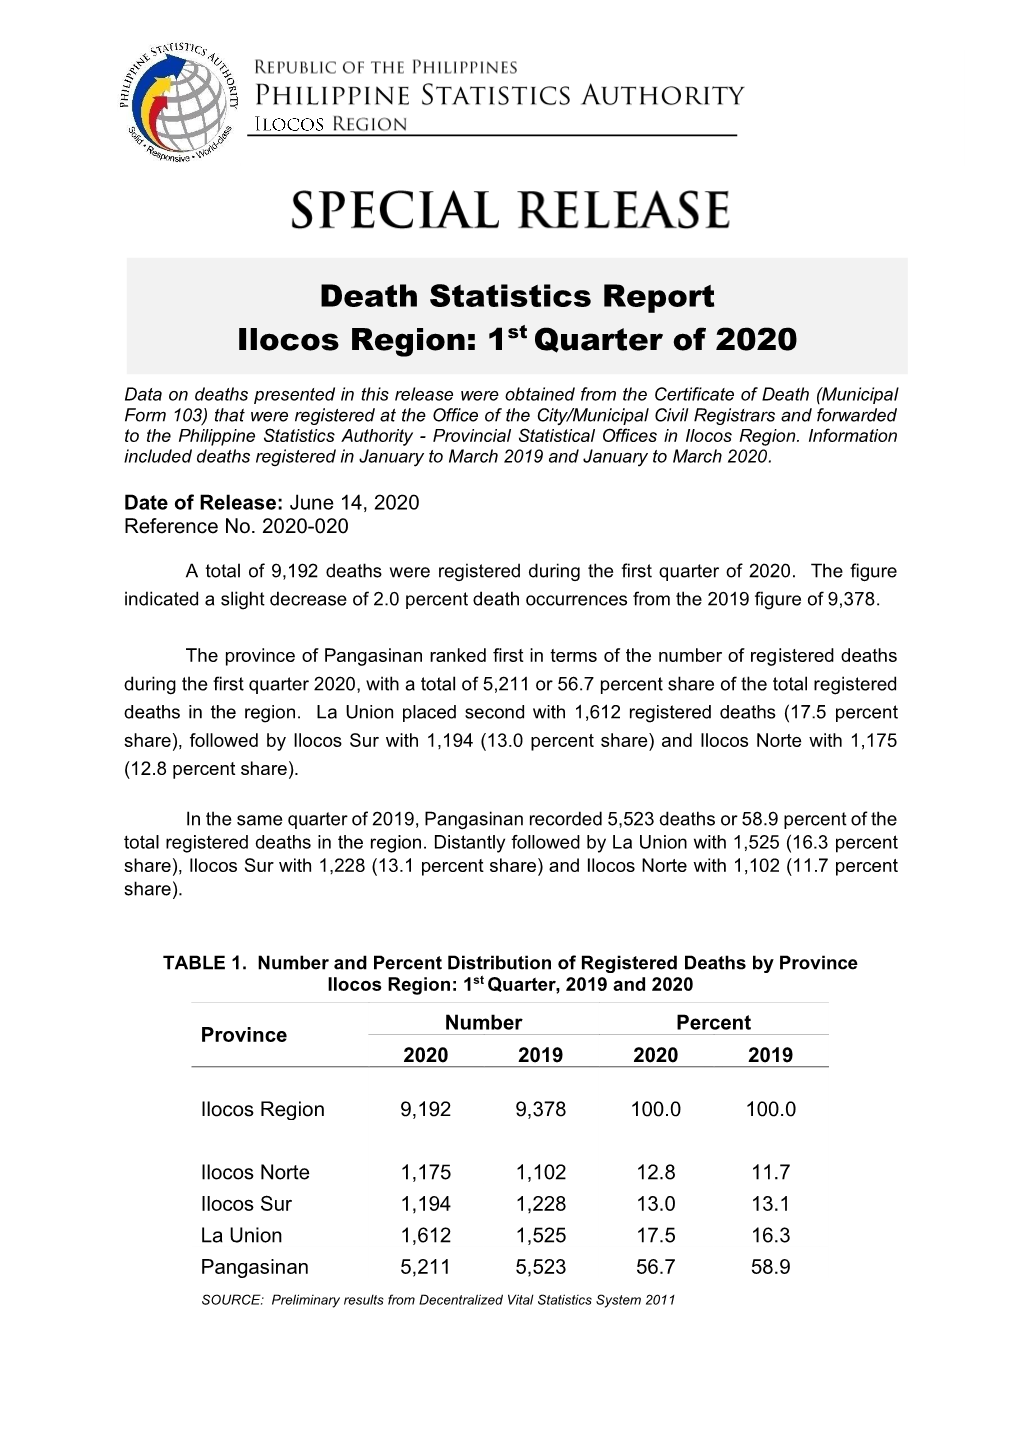 Death Statistics Report Ilocos Region